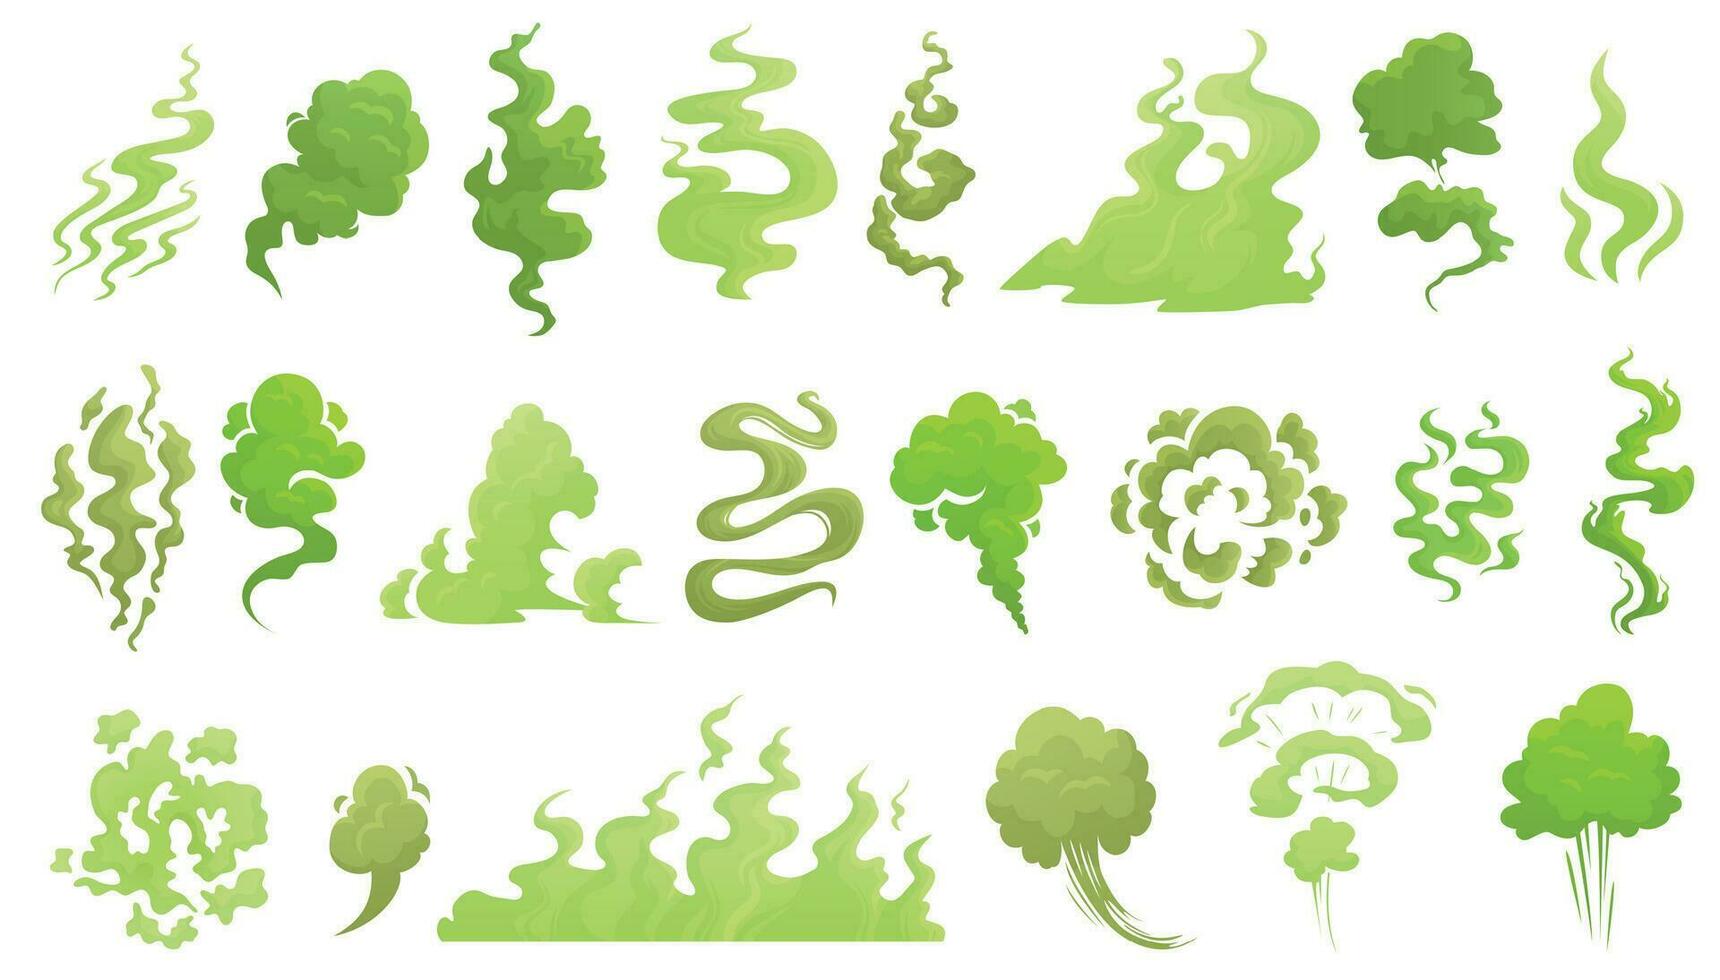 lukta rök. dålig lukt moln, grön stank arom och illaluktande rök tecknad serie vektor illustrartion uppsättning